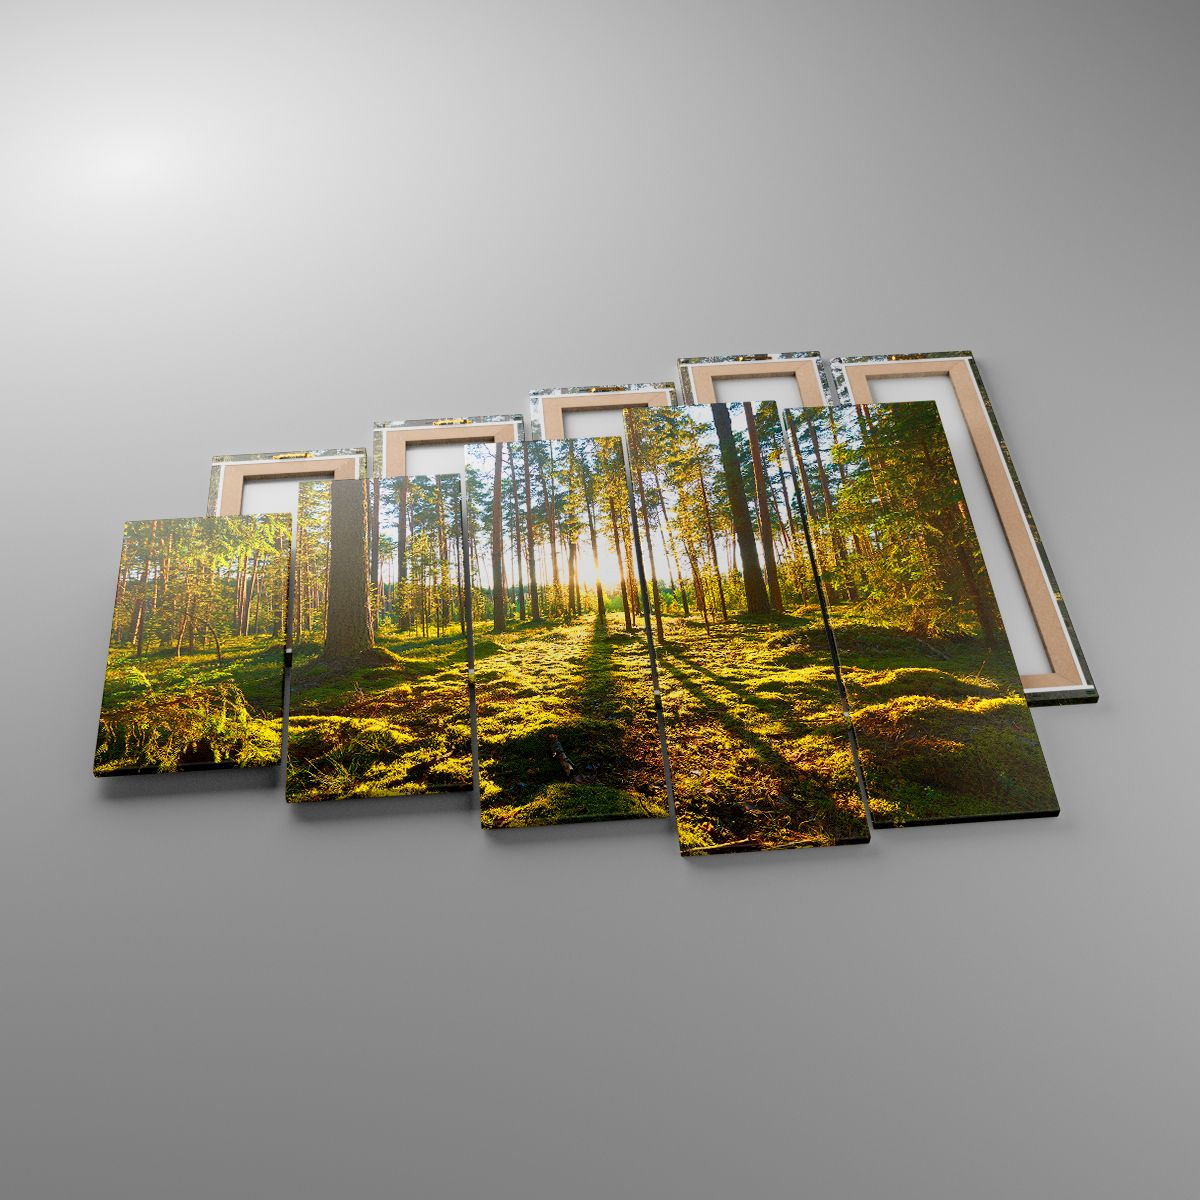 Leinwandbild Landschaft, Leinwandbild Wald, Leinwandbild Natur, Leinwandbild Sonnenstrahlen, Leinwandbild Bäume